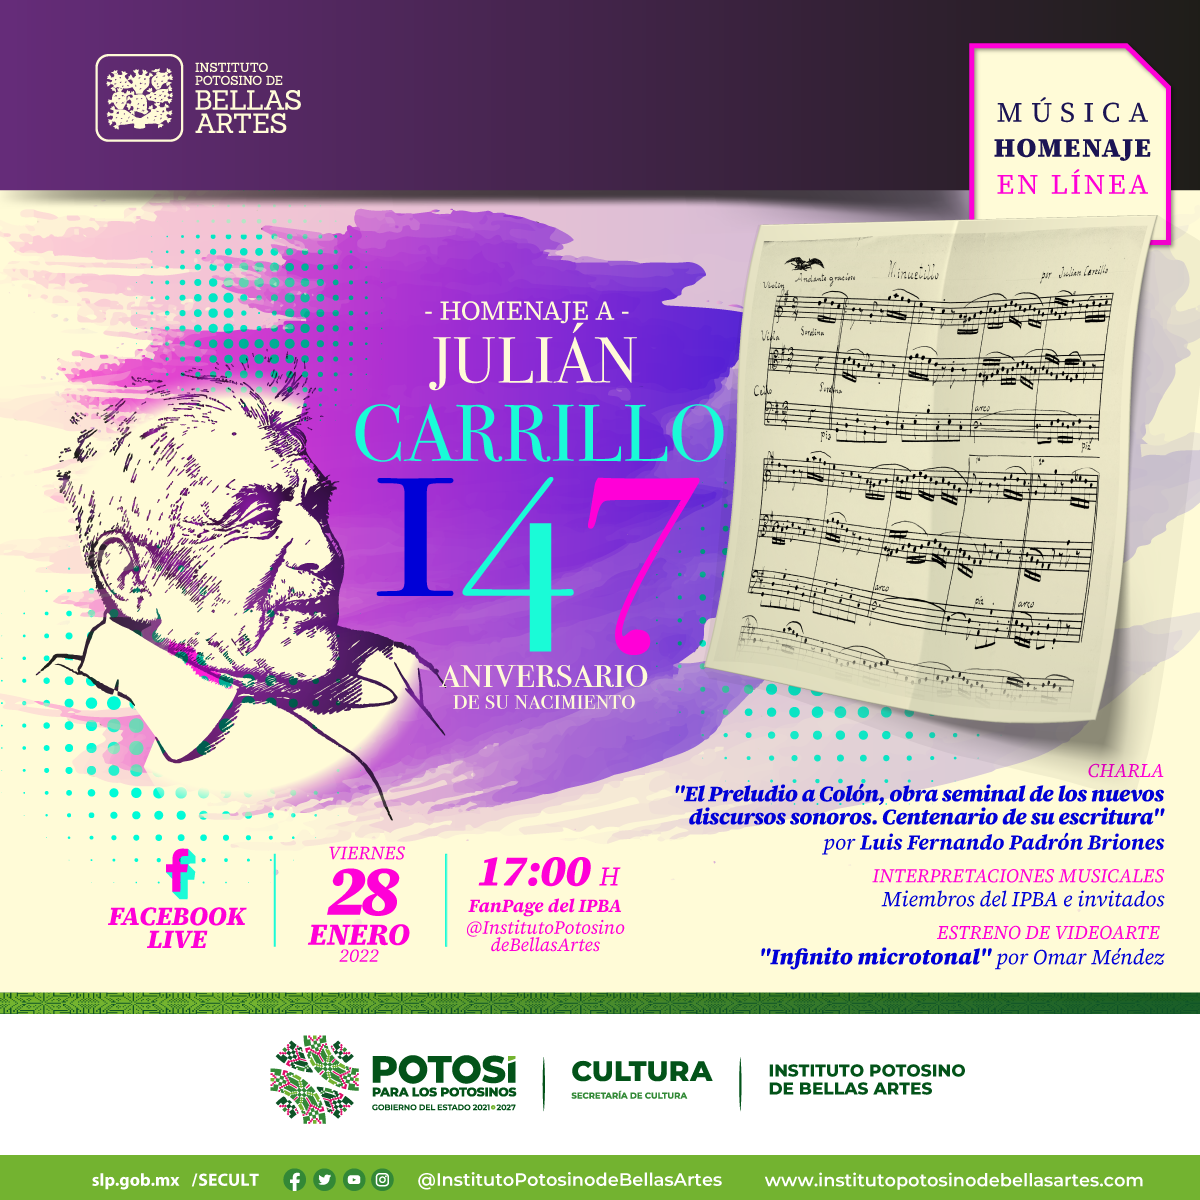 IPBA prepara su tradicional homenaje a Julián Carrillo